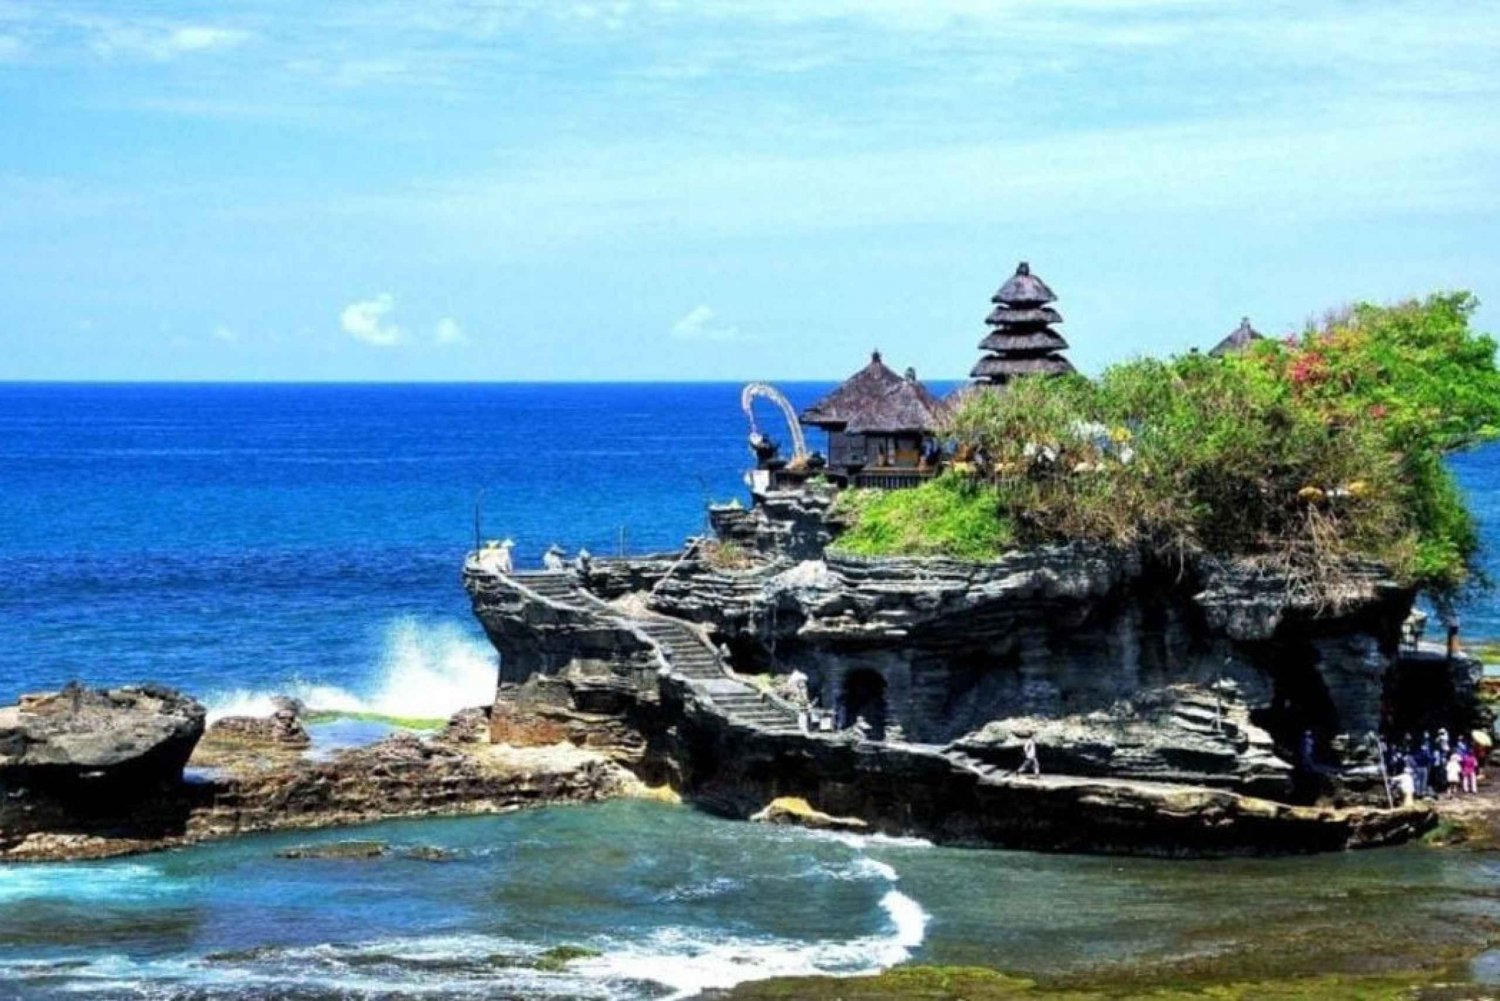 Bali : Tanah Lot Temple, Padang-padang Beach, Kecak Dance